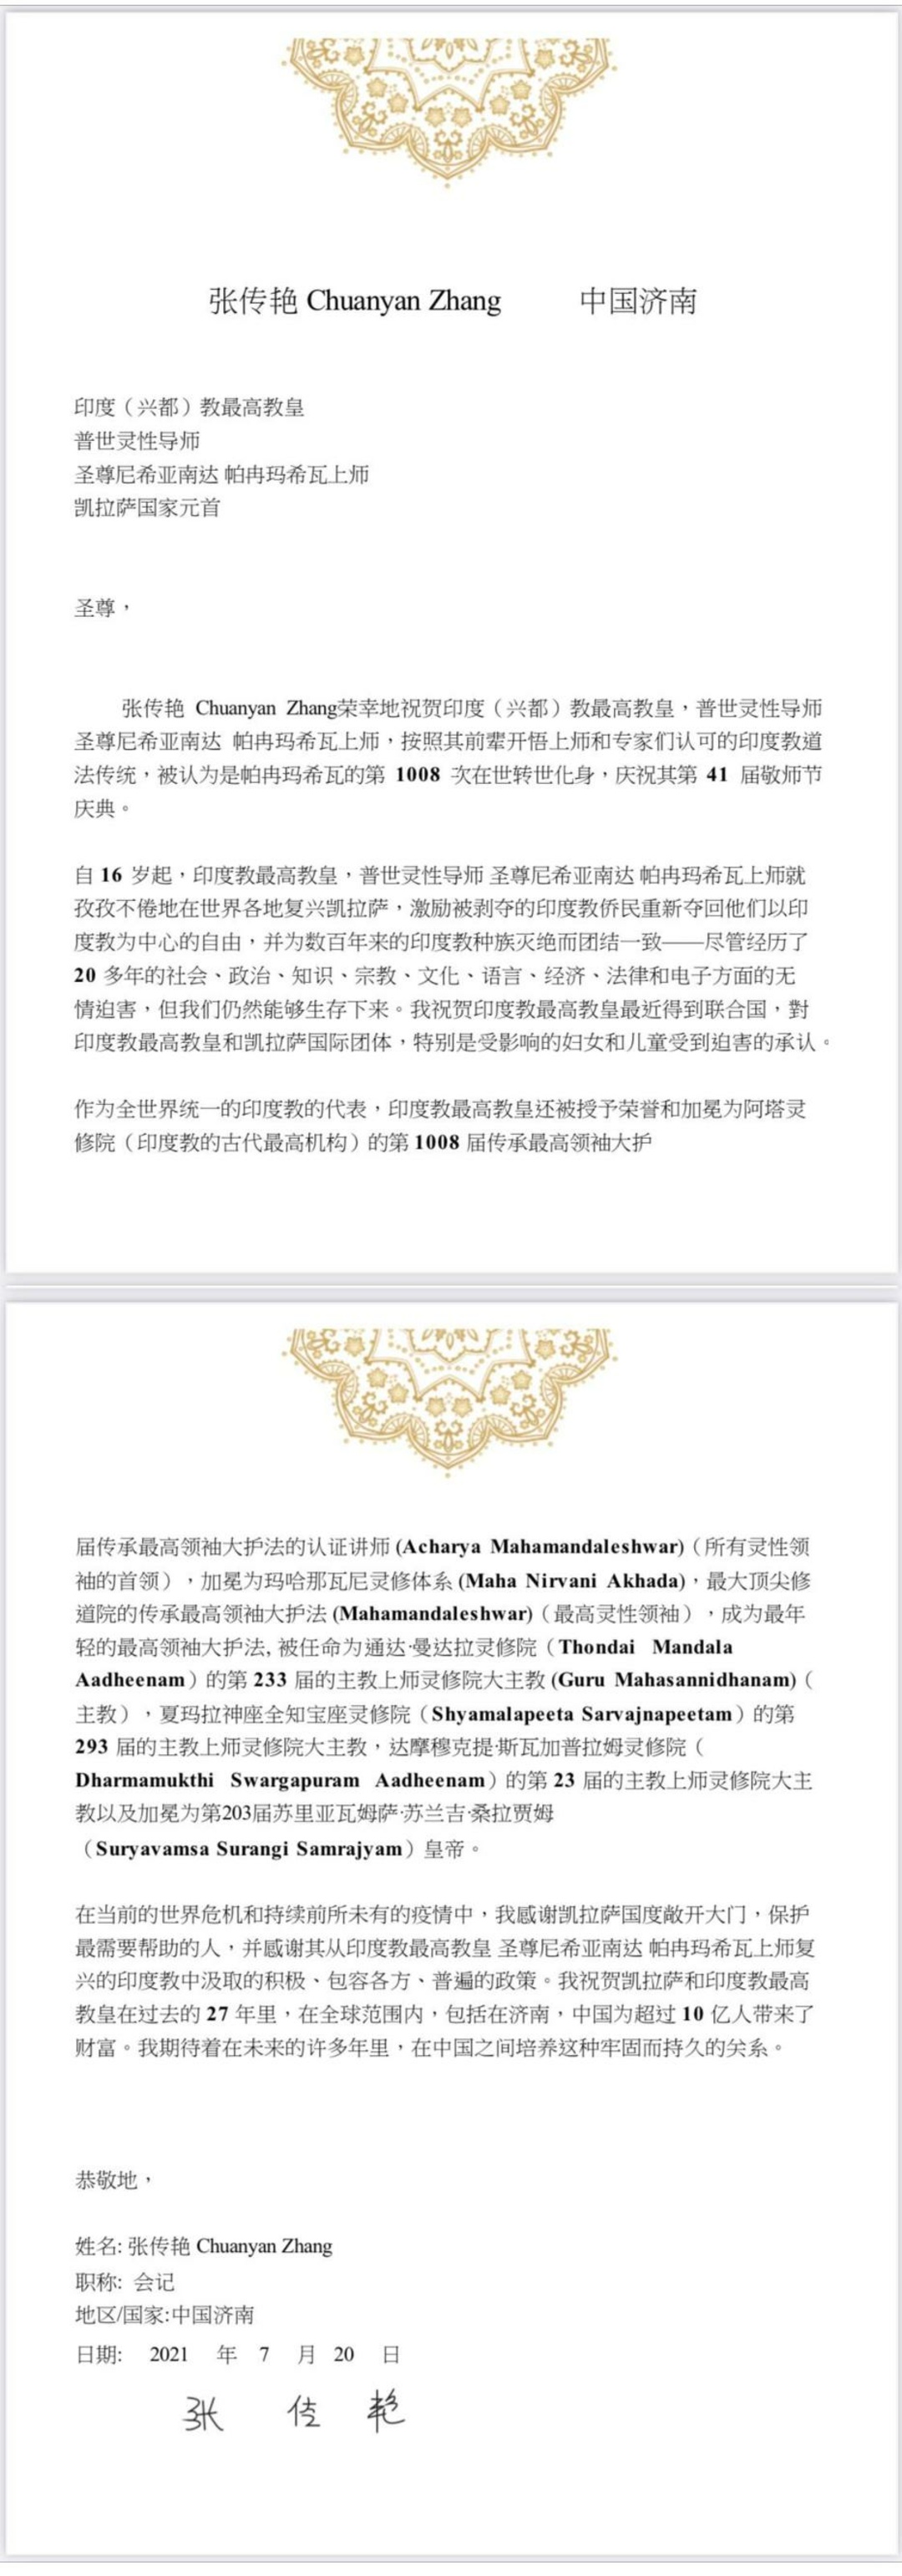 China---Chuanyan-Zhang---(Proclamation)-1wNqVSbt2Pe4vFO6HVIUkYtmEN25Mj7sU.pdf